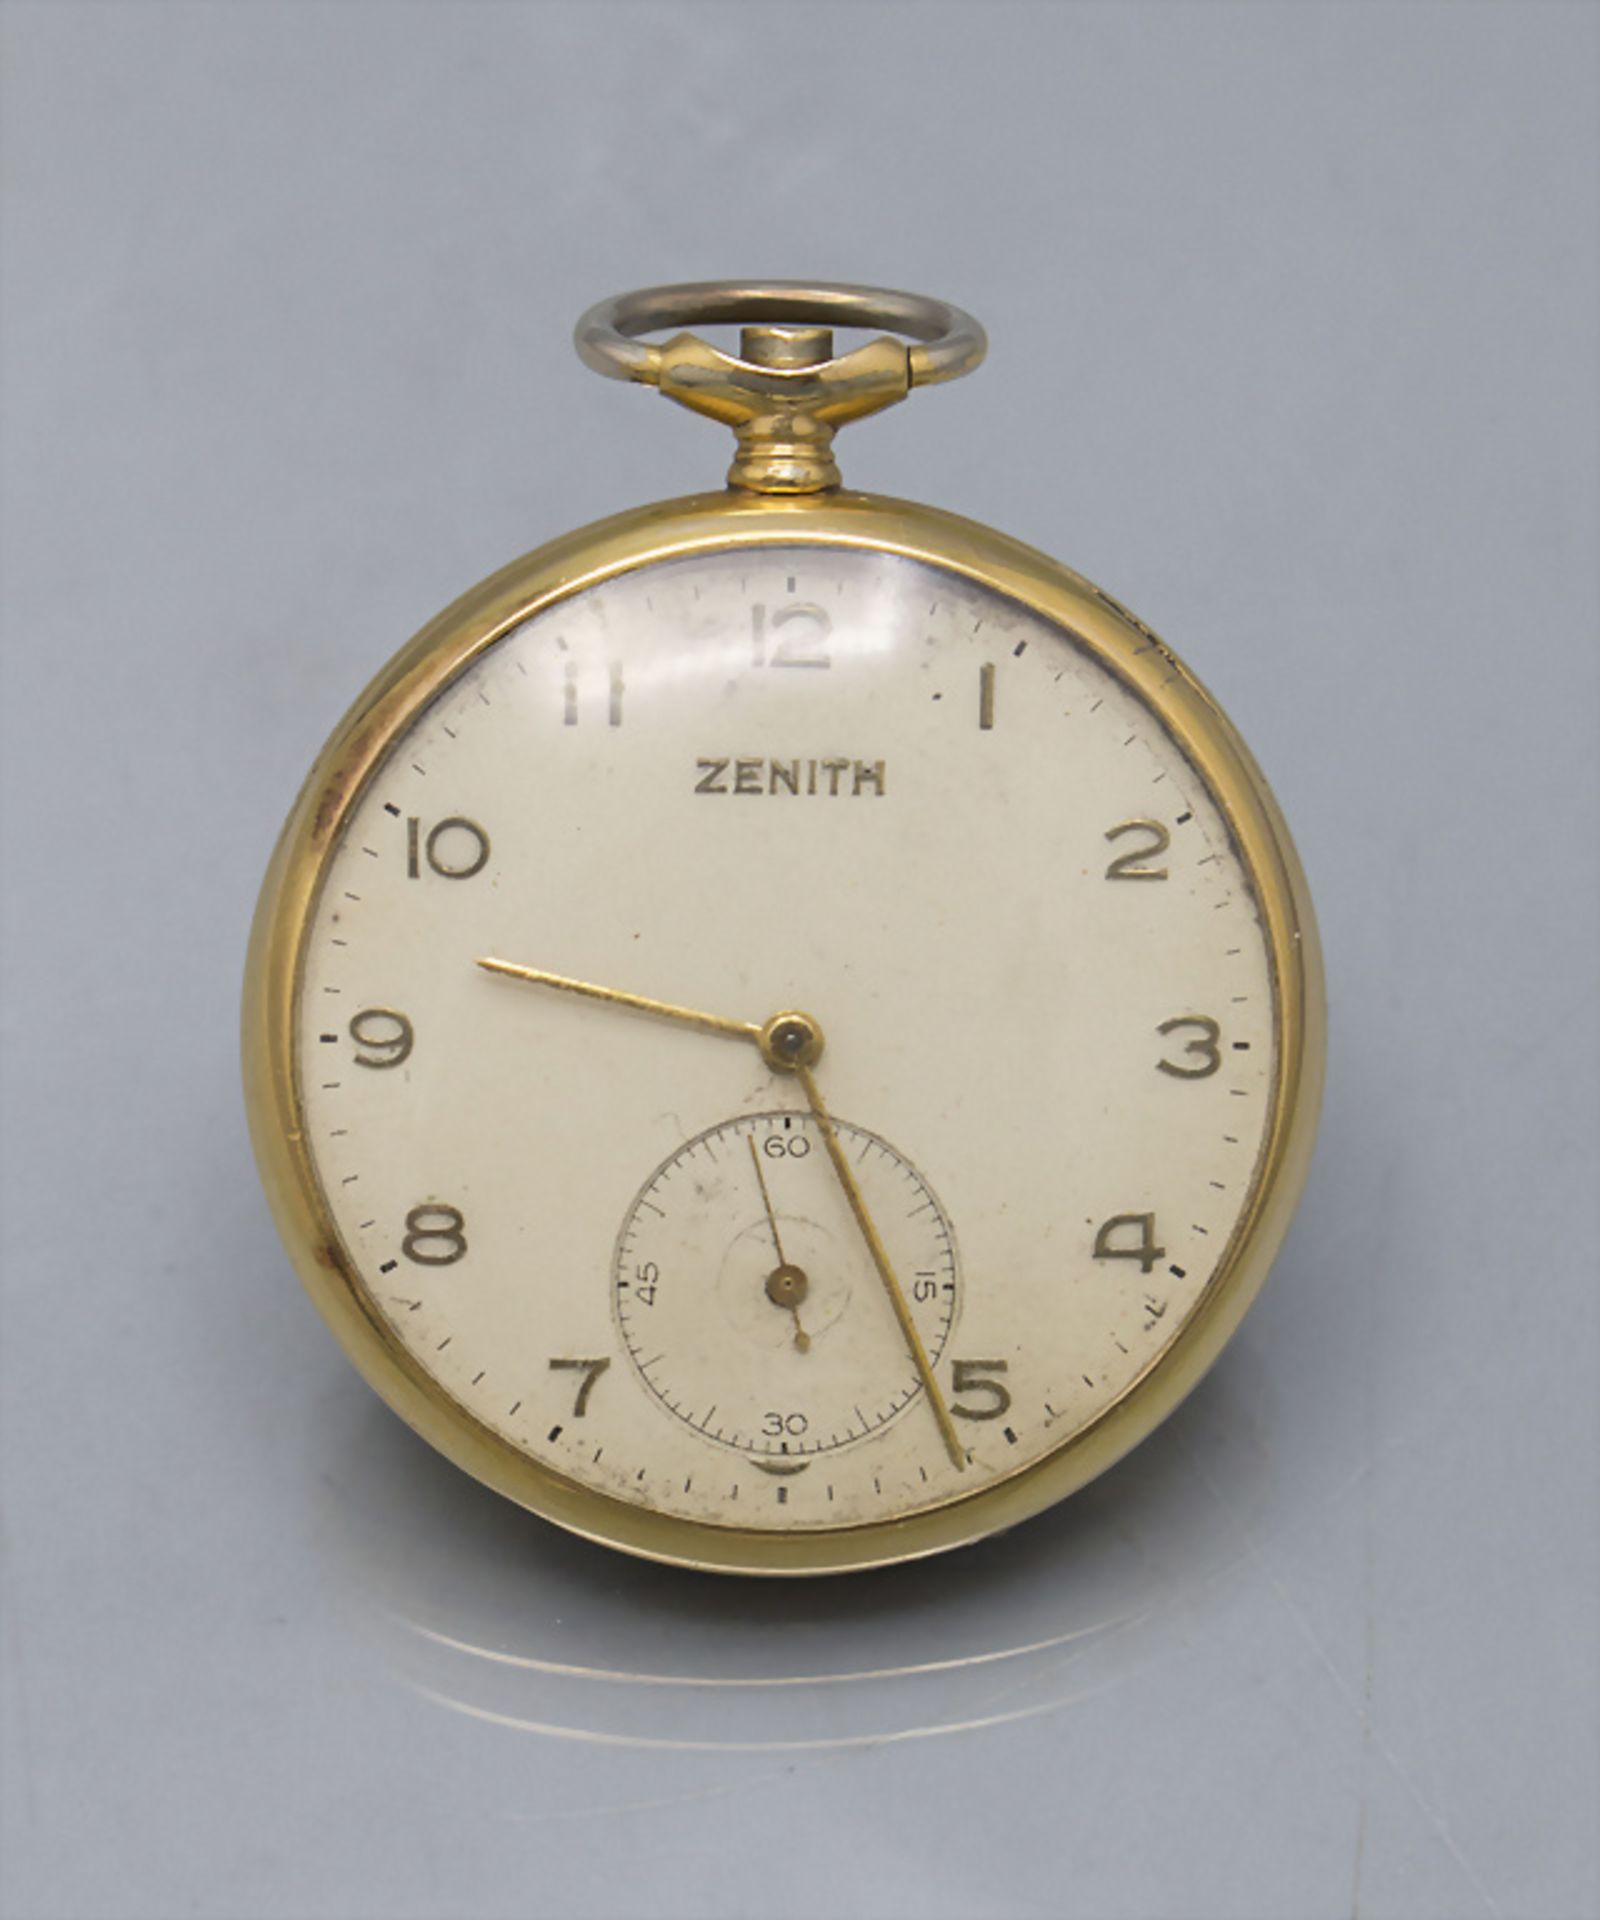 Taschenuhr mit 14 Kt Gold Kette / A pocket watch with a 14 ct gold chain, Zenith, Swiss, um 1950